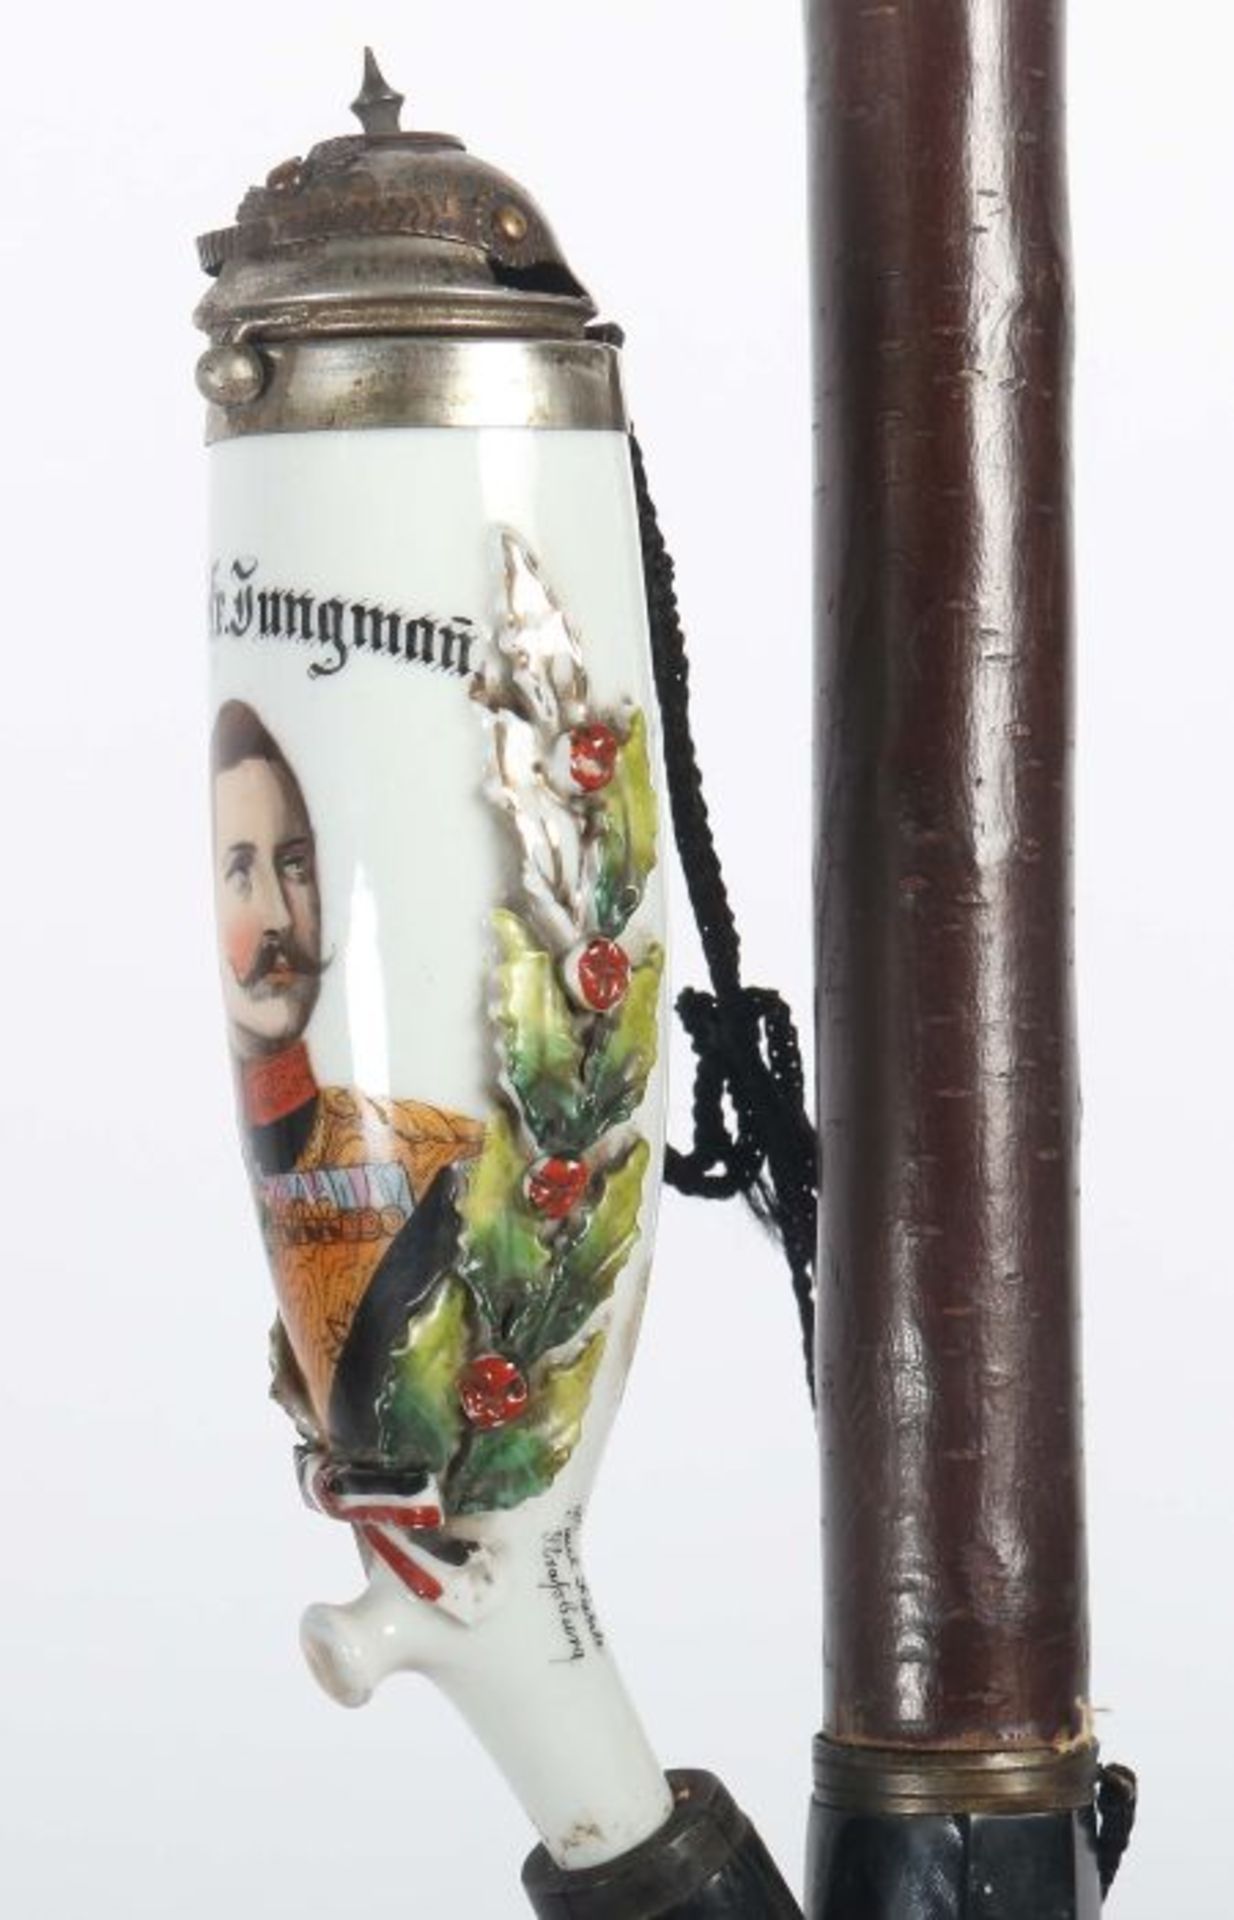 Reservistenpfeife1897/1899, Porzellanpfeifenkopf mit Brustbild Kaiser Wilhelm's II., erhabene - Bild 5 aus 5